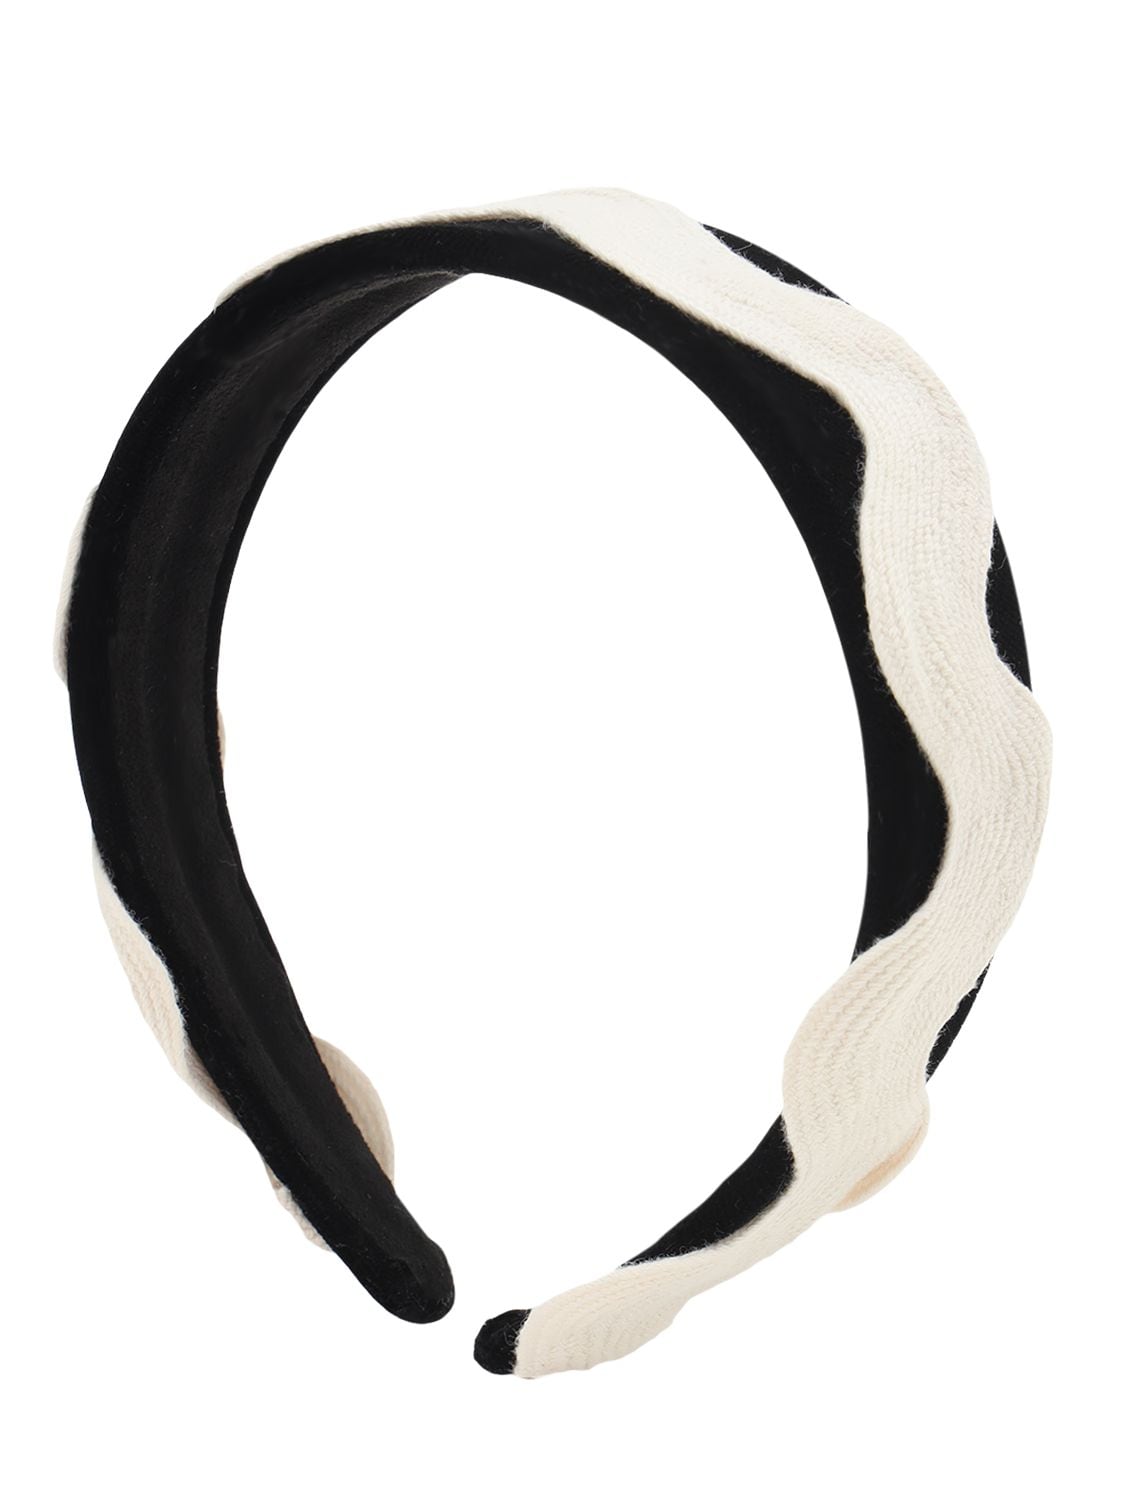 Tia Cibani Kids' Embroidered Appliqué Headband In Black,white